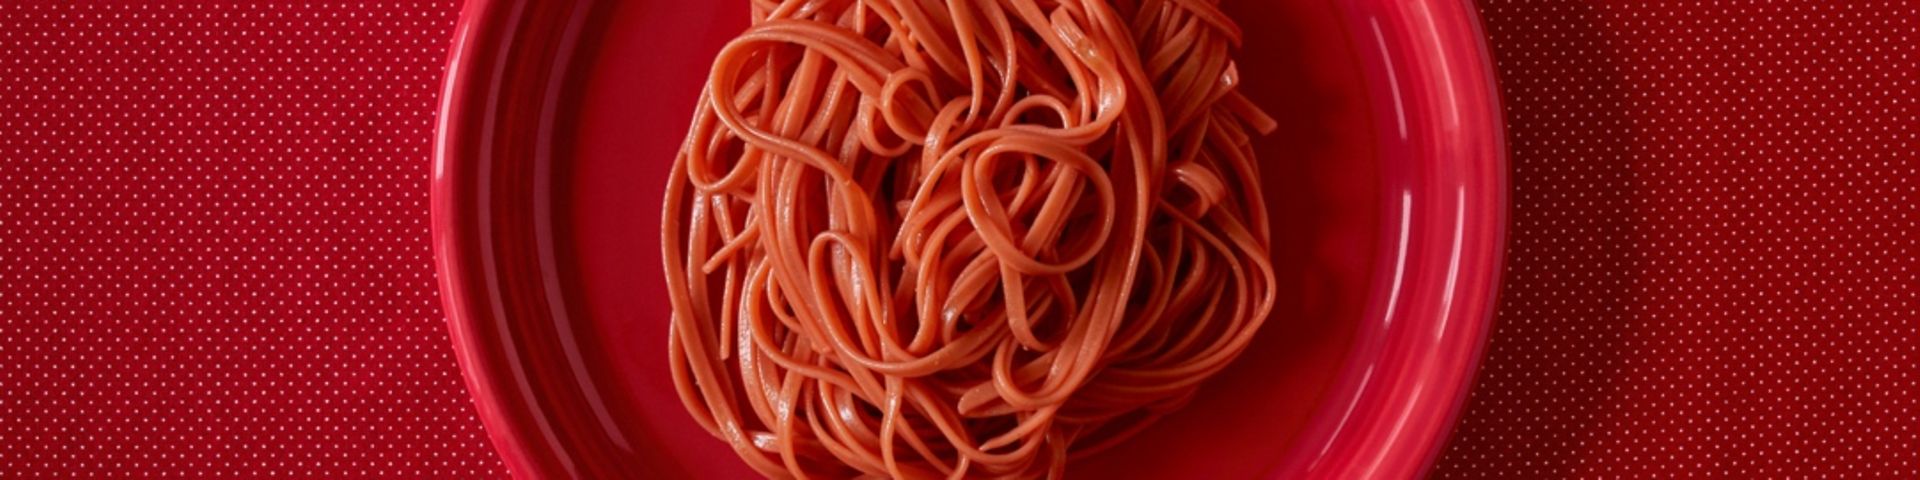 Roter Teller mit Pasta in Tomatensoße auf rotem Tischtuch